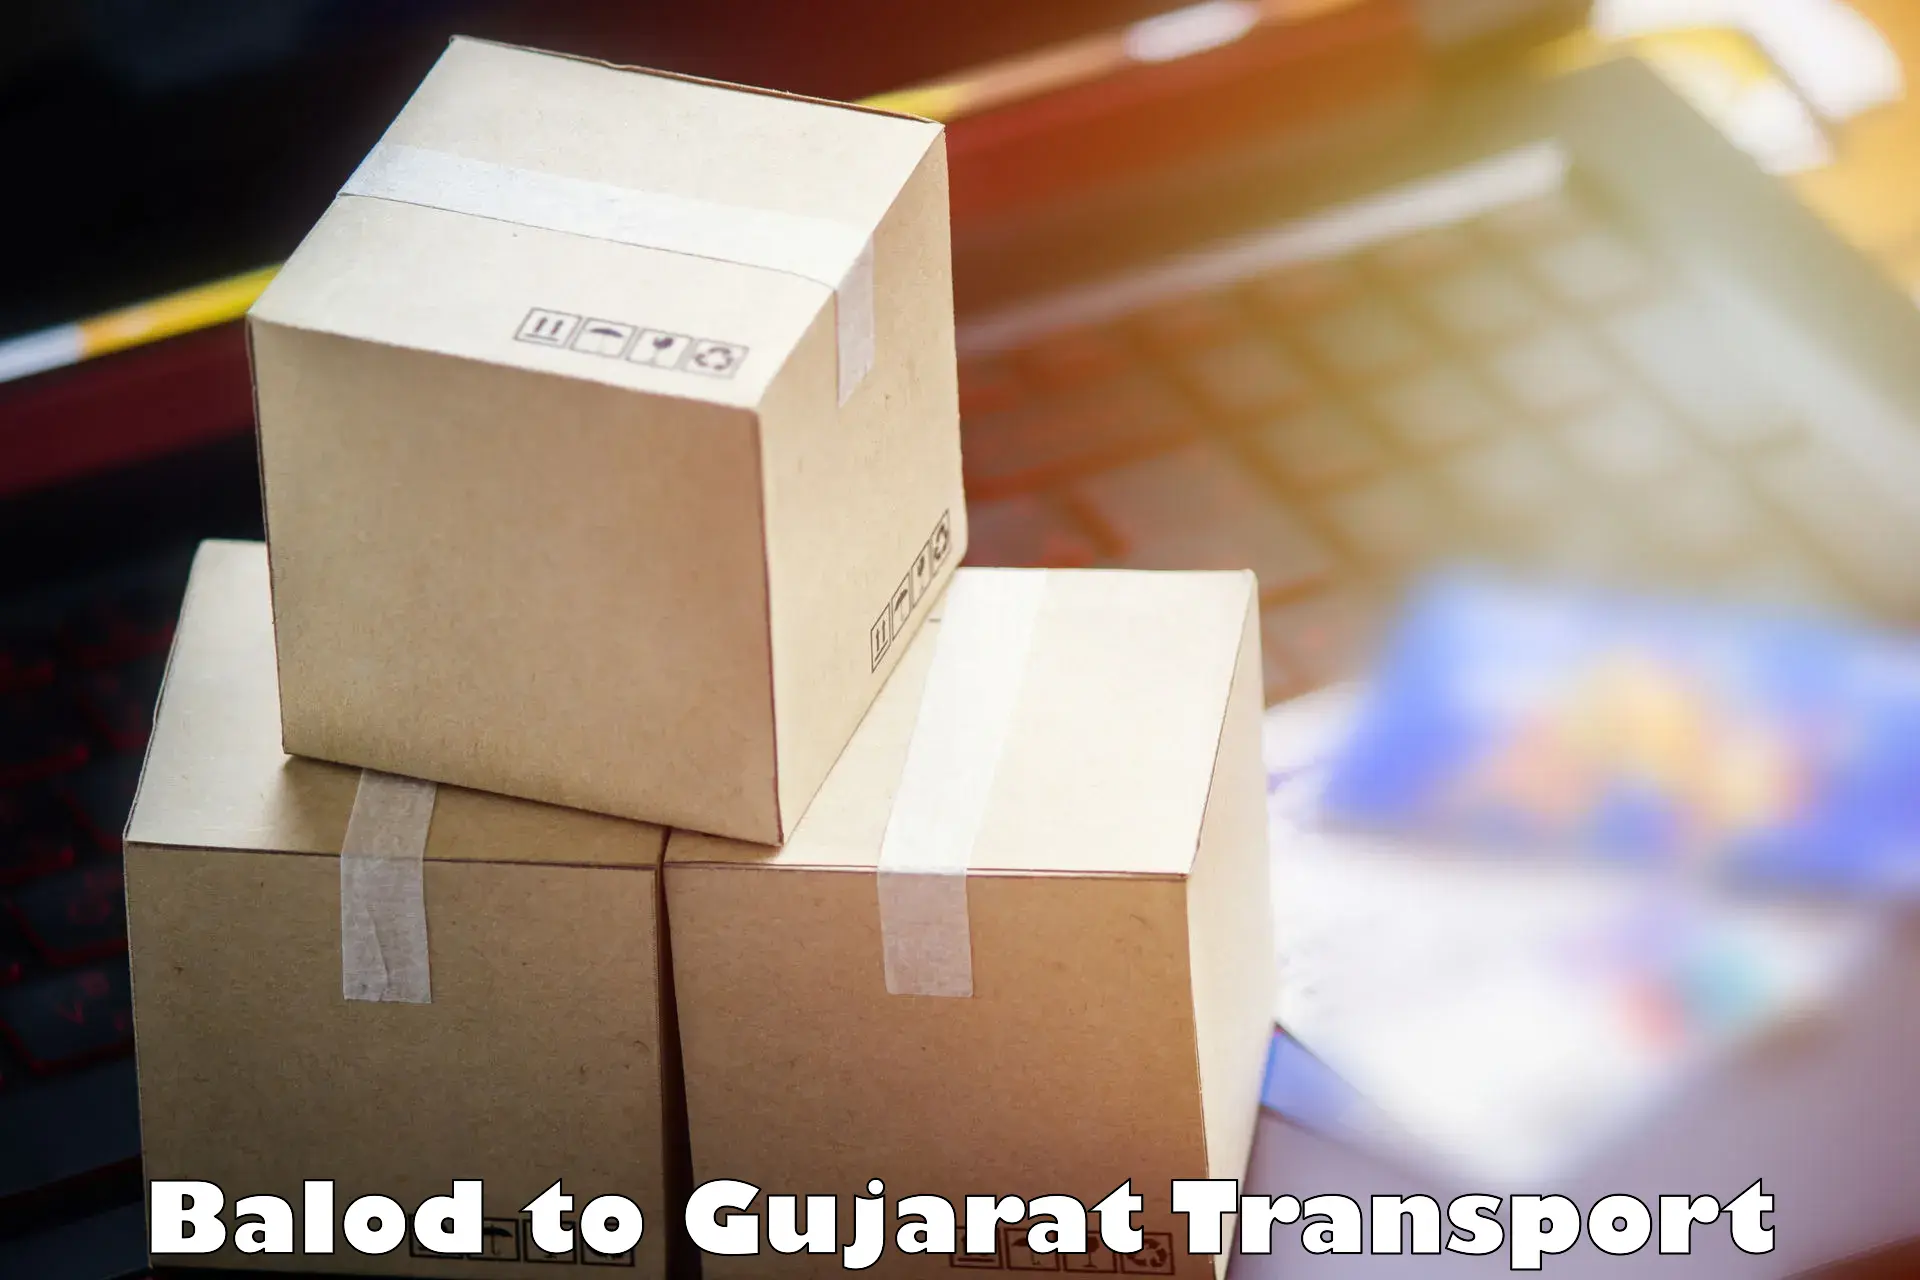 Furniture transport service Balod to Gujarat